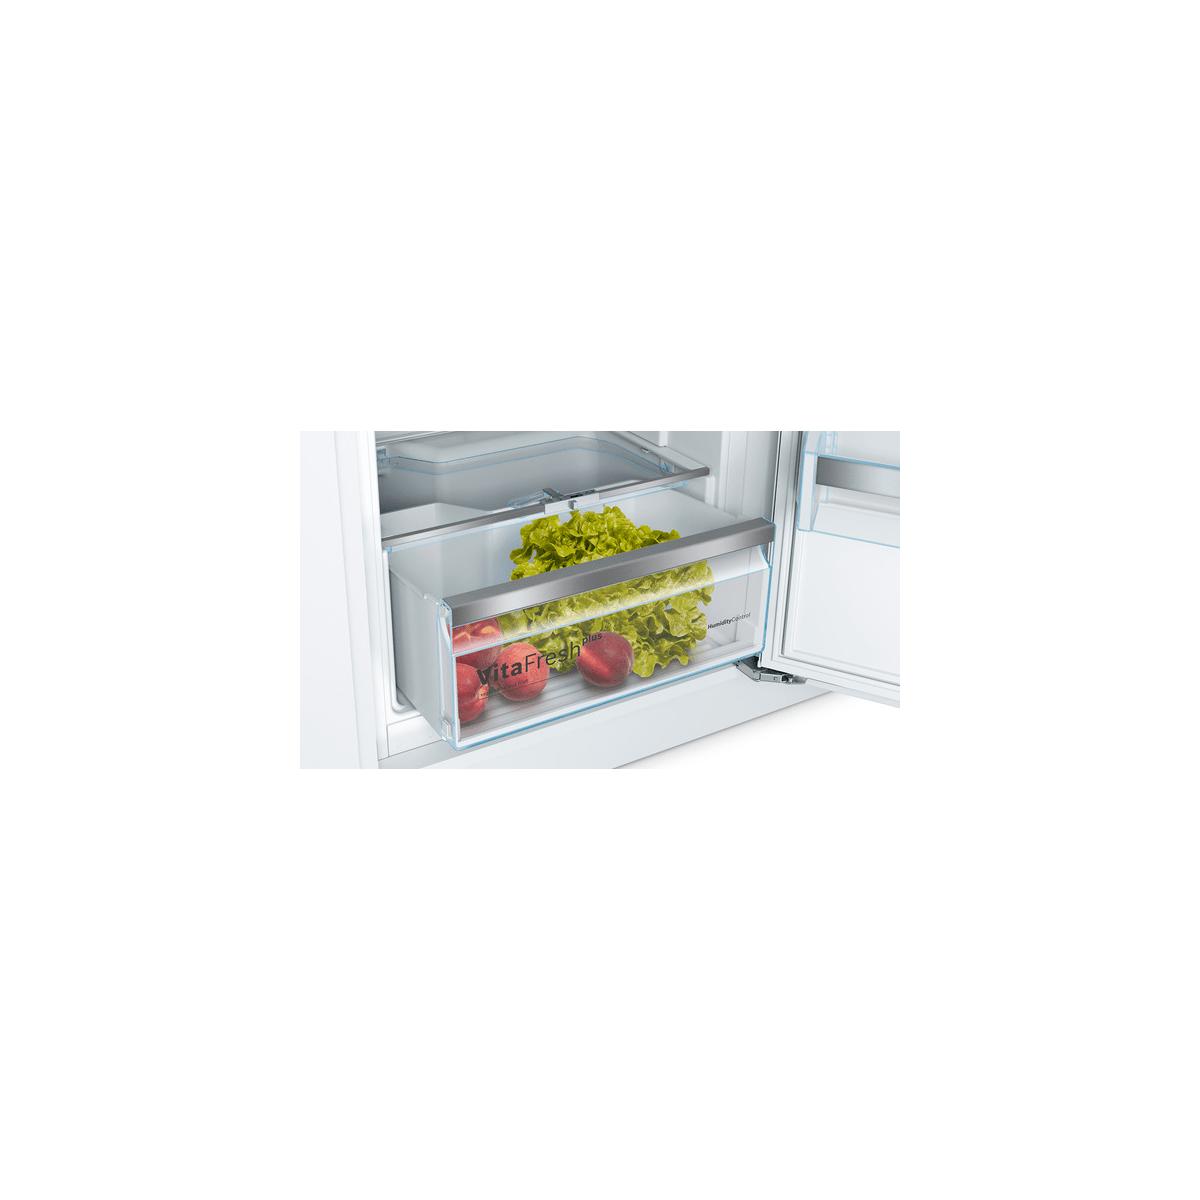 Bosch KIL52ADE0 Einbau Kühlschrank mit Gefrierfach - HORNBACH